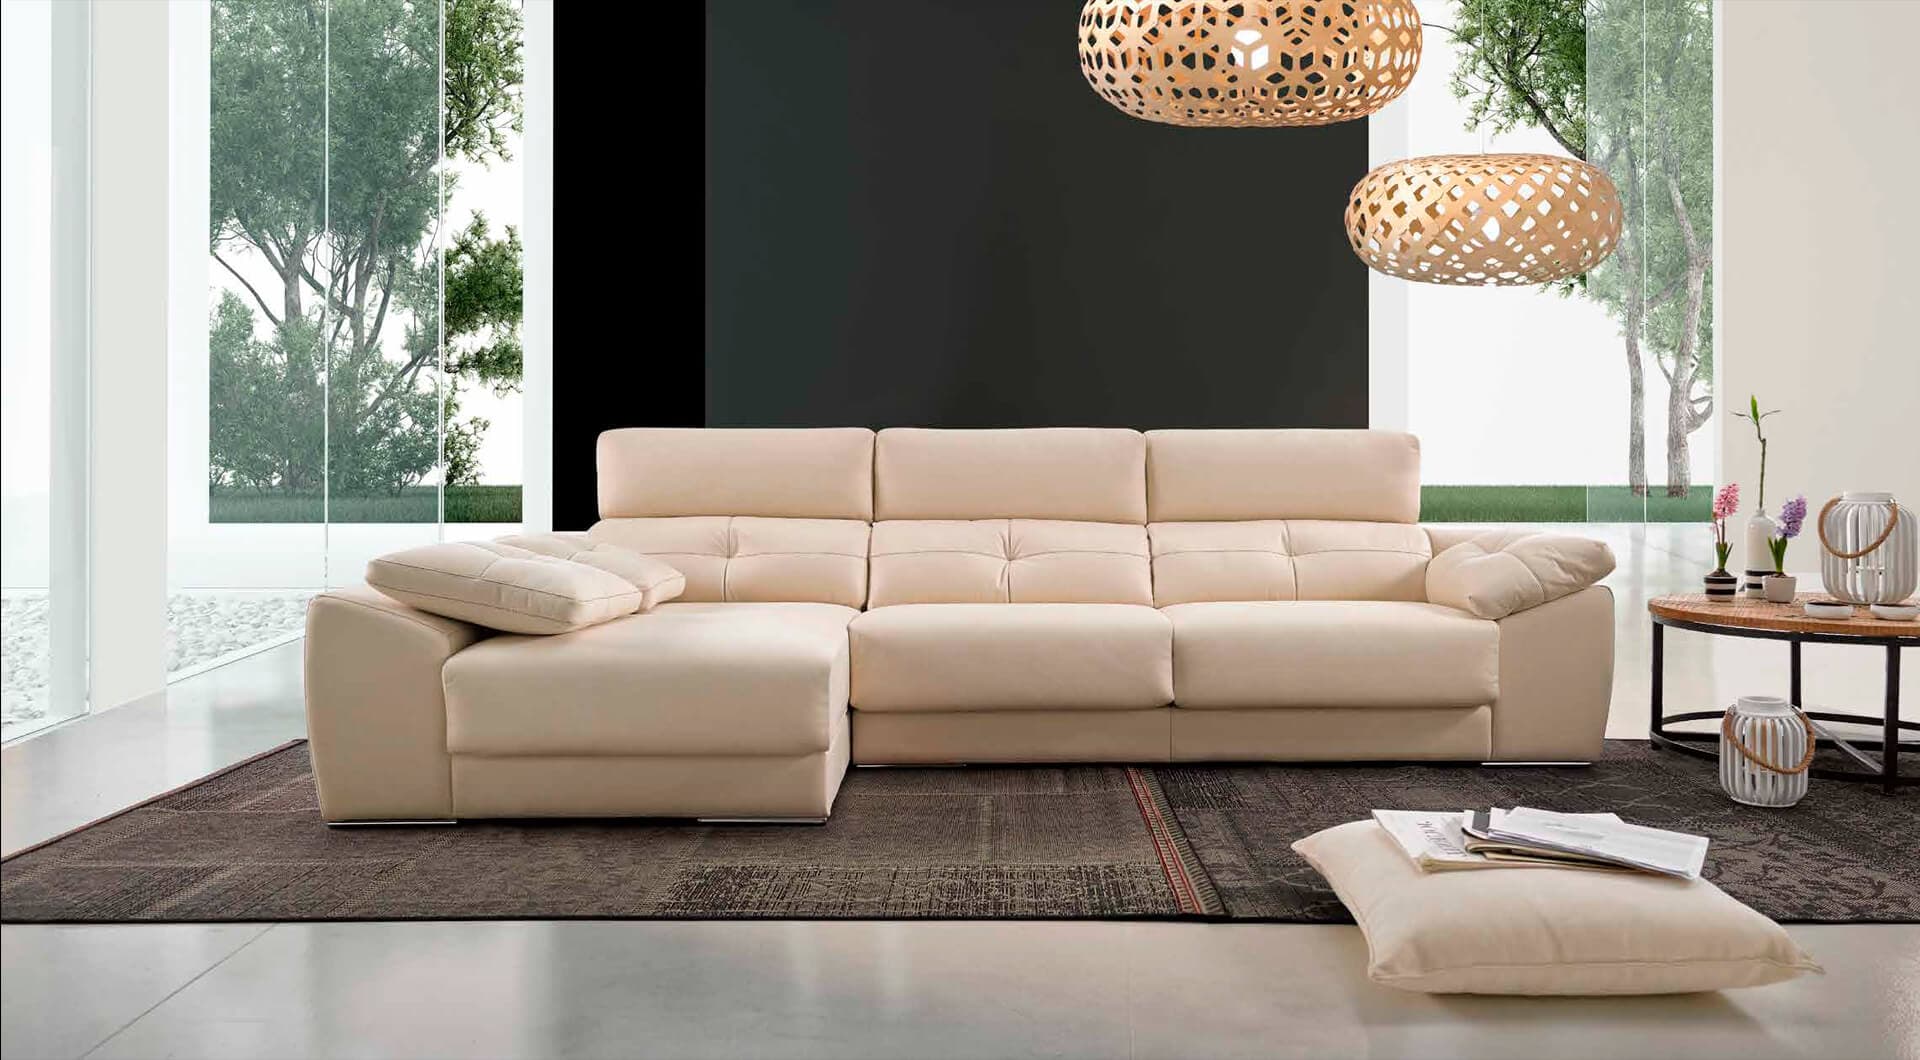 Artemoble - ¡Pide presupuesto para tus nuevos muebles!